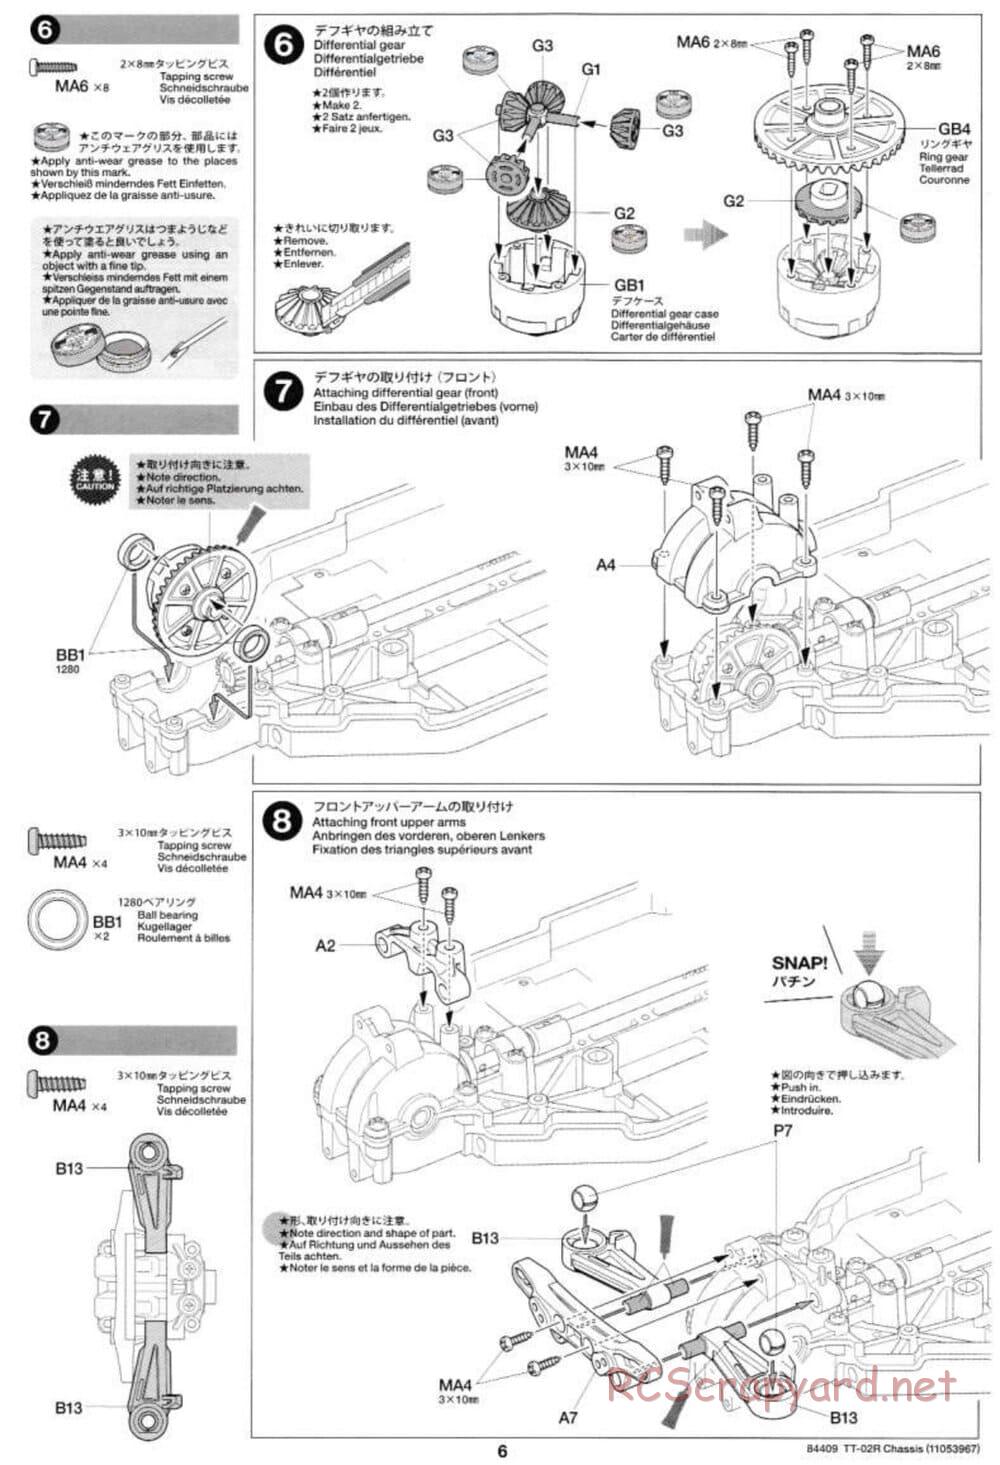 Tamiya - TT-02R Chassis - Manual - Page 6